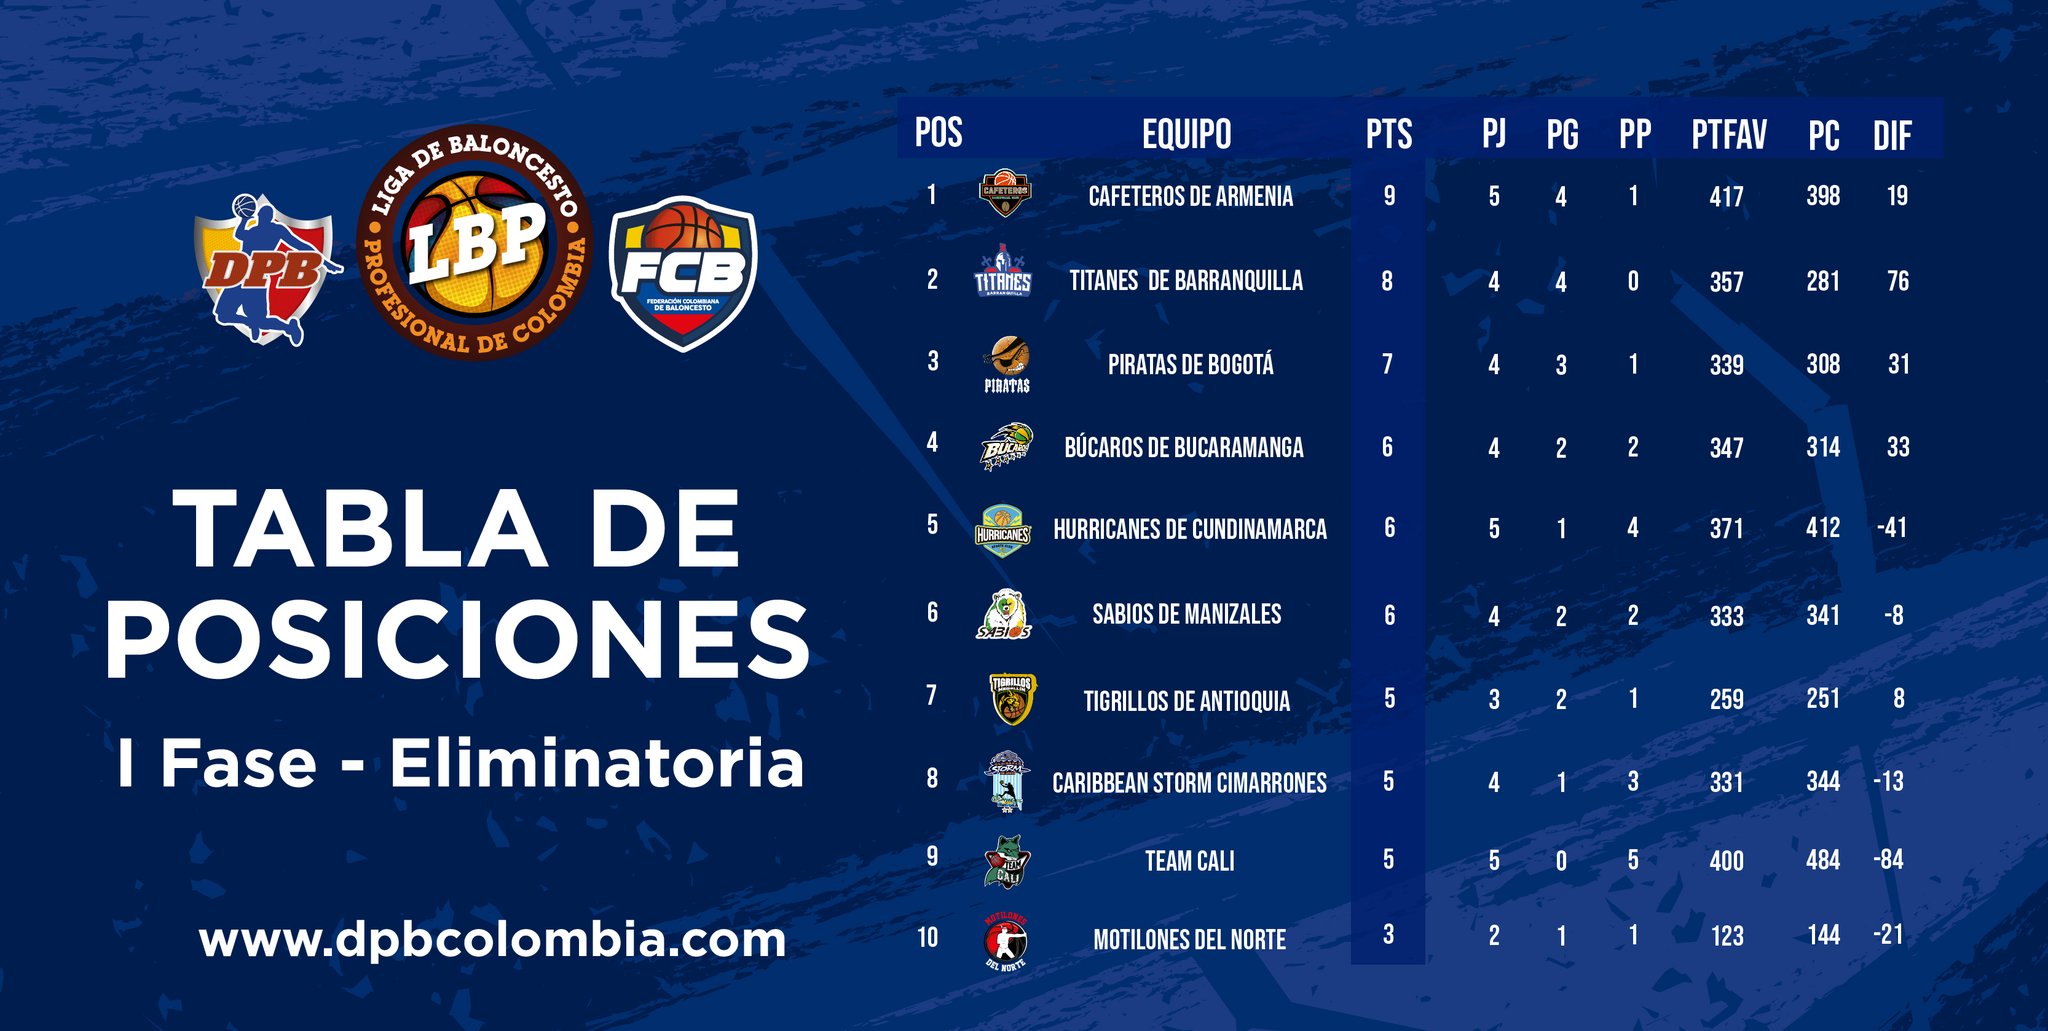 DPB Colombia on Twitter: "#LBP2021-1 | ¡ASÍ ESTÁ LA DE POSICIONES 📈📉 la tabla de posiciones de la Profesional de Baloncesto en esta primera fase eliminatoria, en la cual